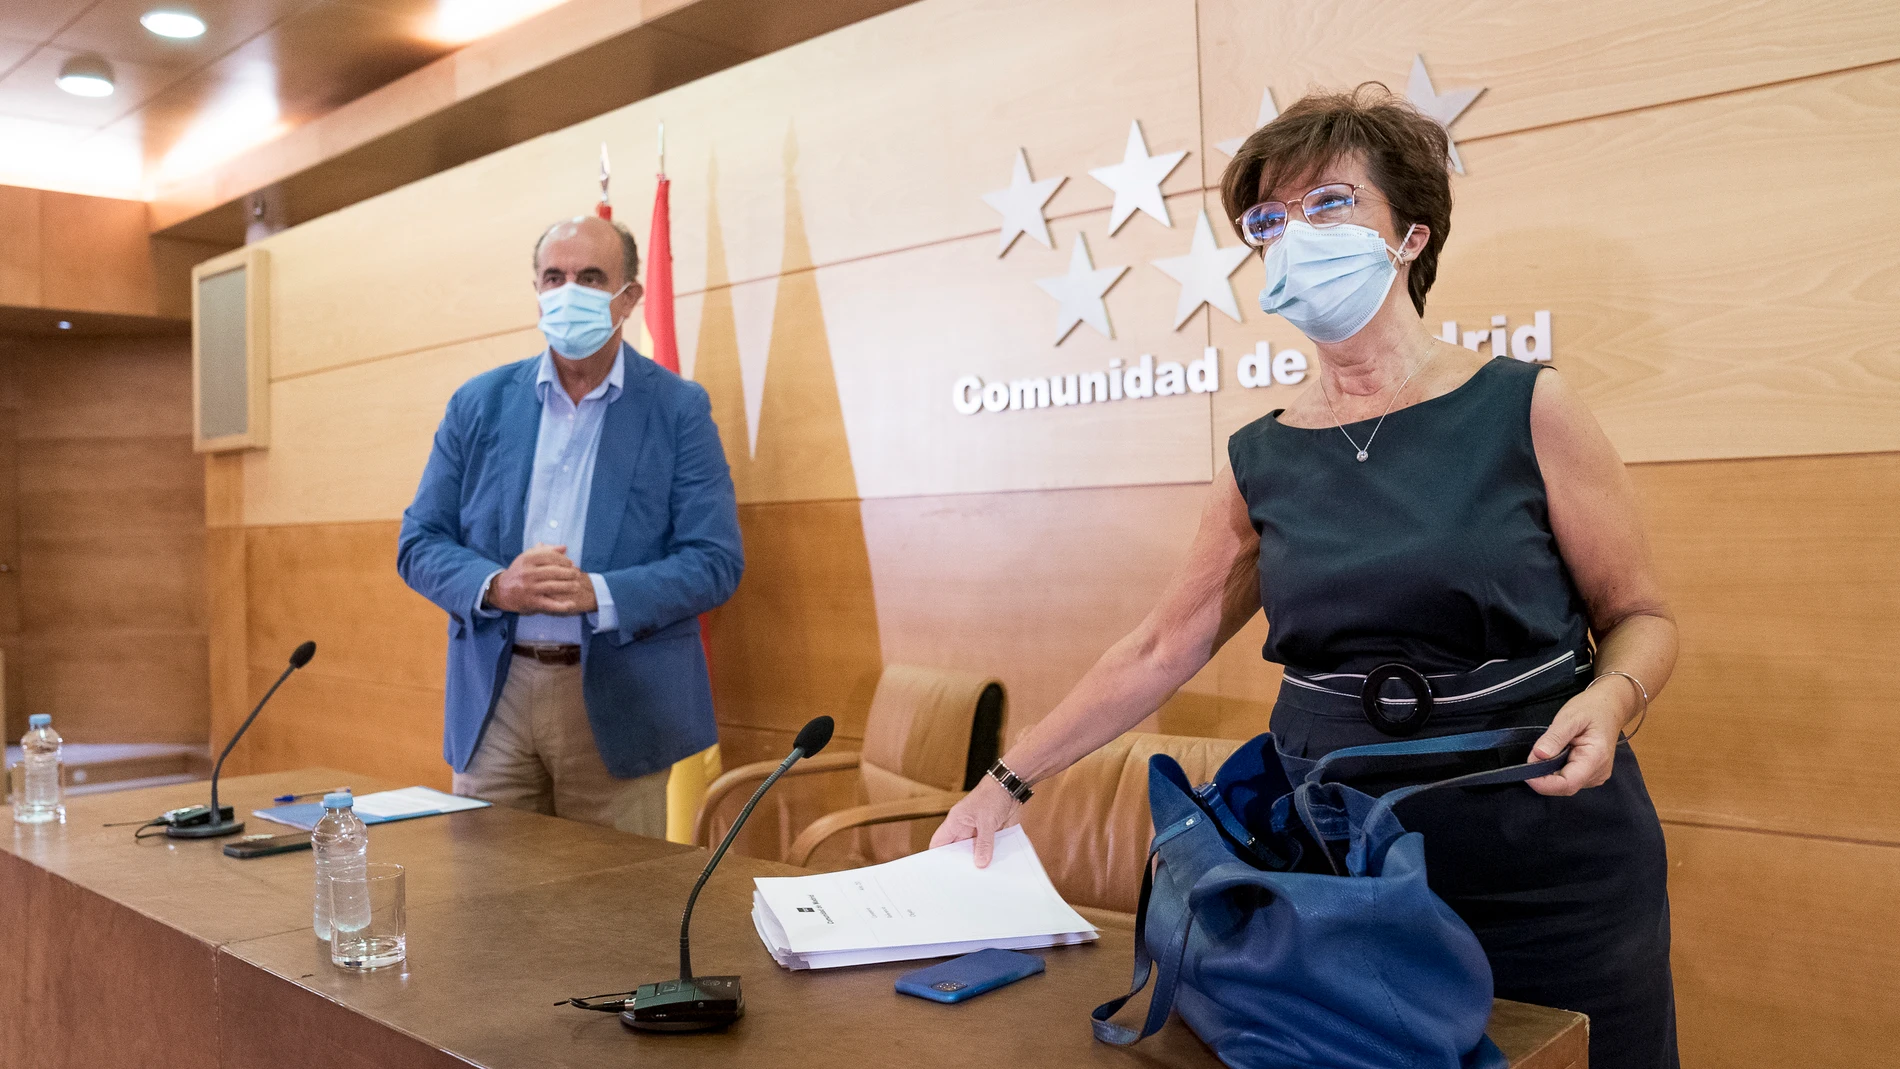 El viceconsejero de Asistencia Sanitaria y Salud Pública de la Comunidad de Madrid, Antonio Zapatero, y la directora general de Salud Pública, Elena Andradas